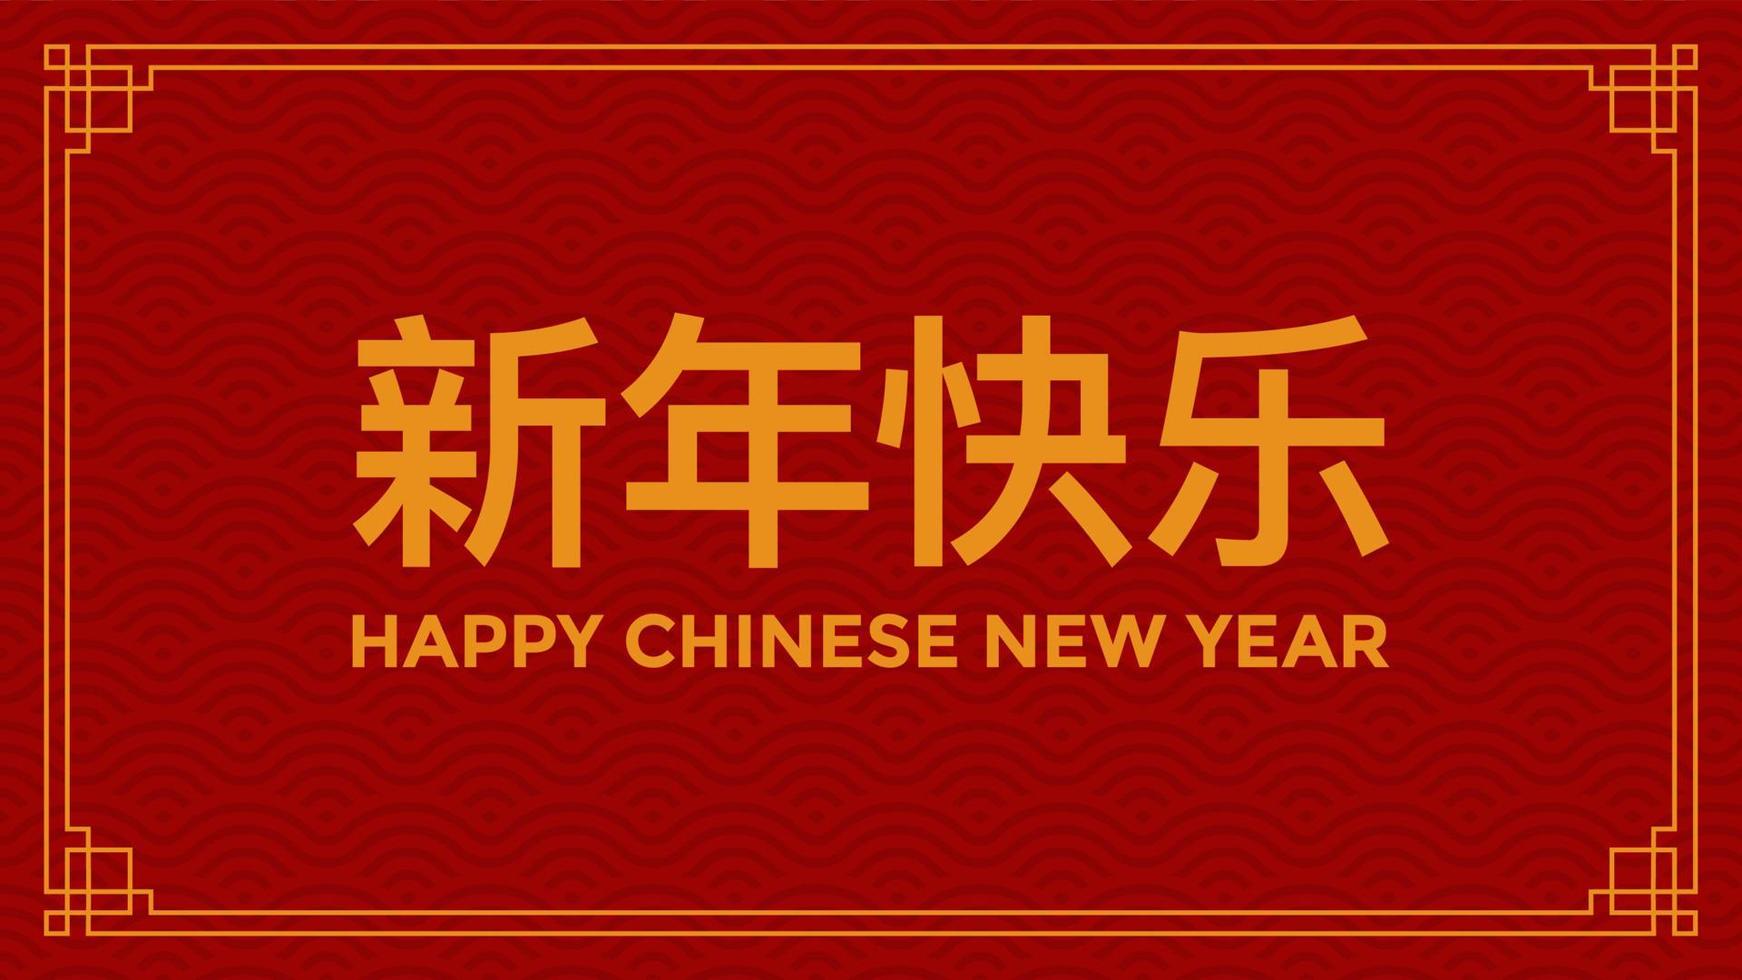 design de banner do festival de feliz ano novo chinês vermelho e dourado. banner com vetor de ornamento festivo asiático. traduzir do feliz ano novo chinês. ilustração vetorial.